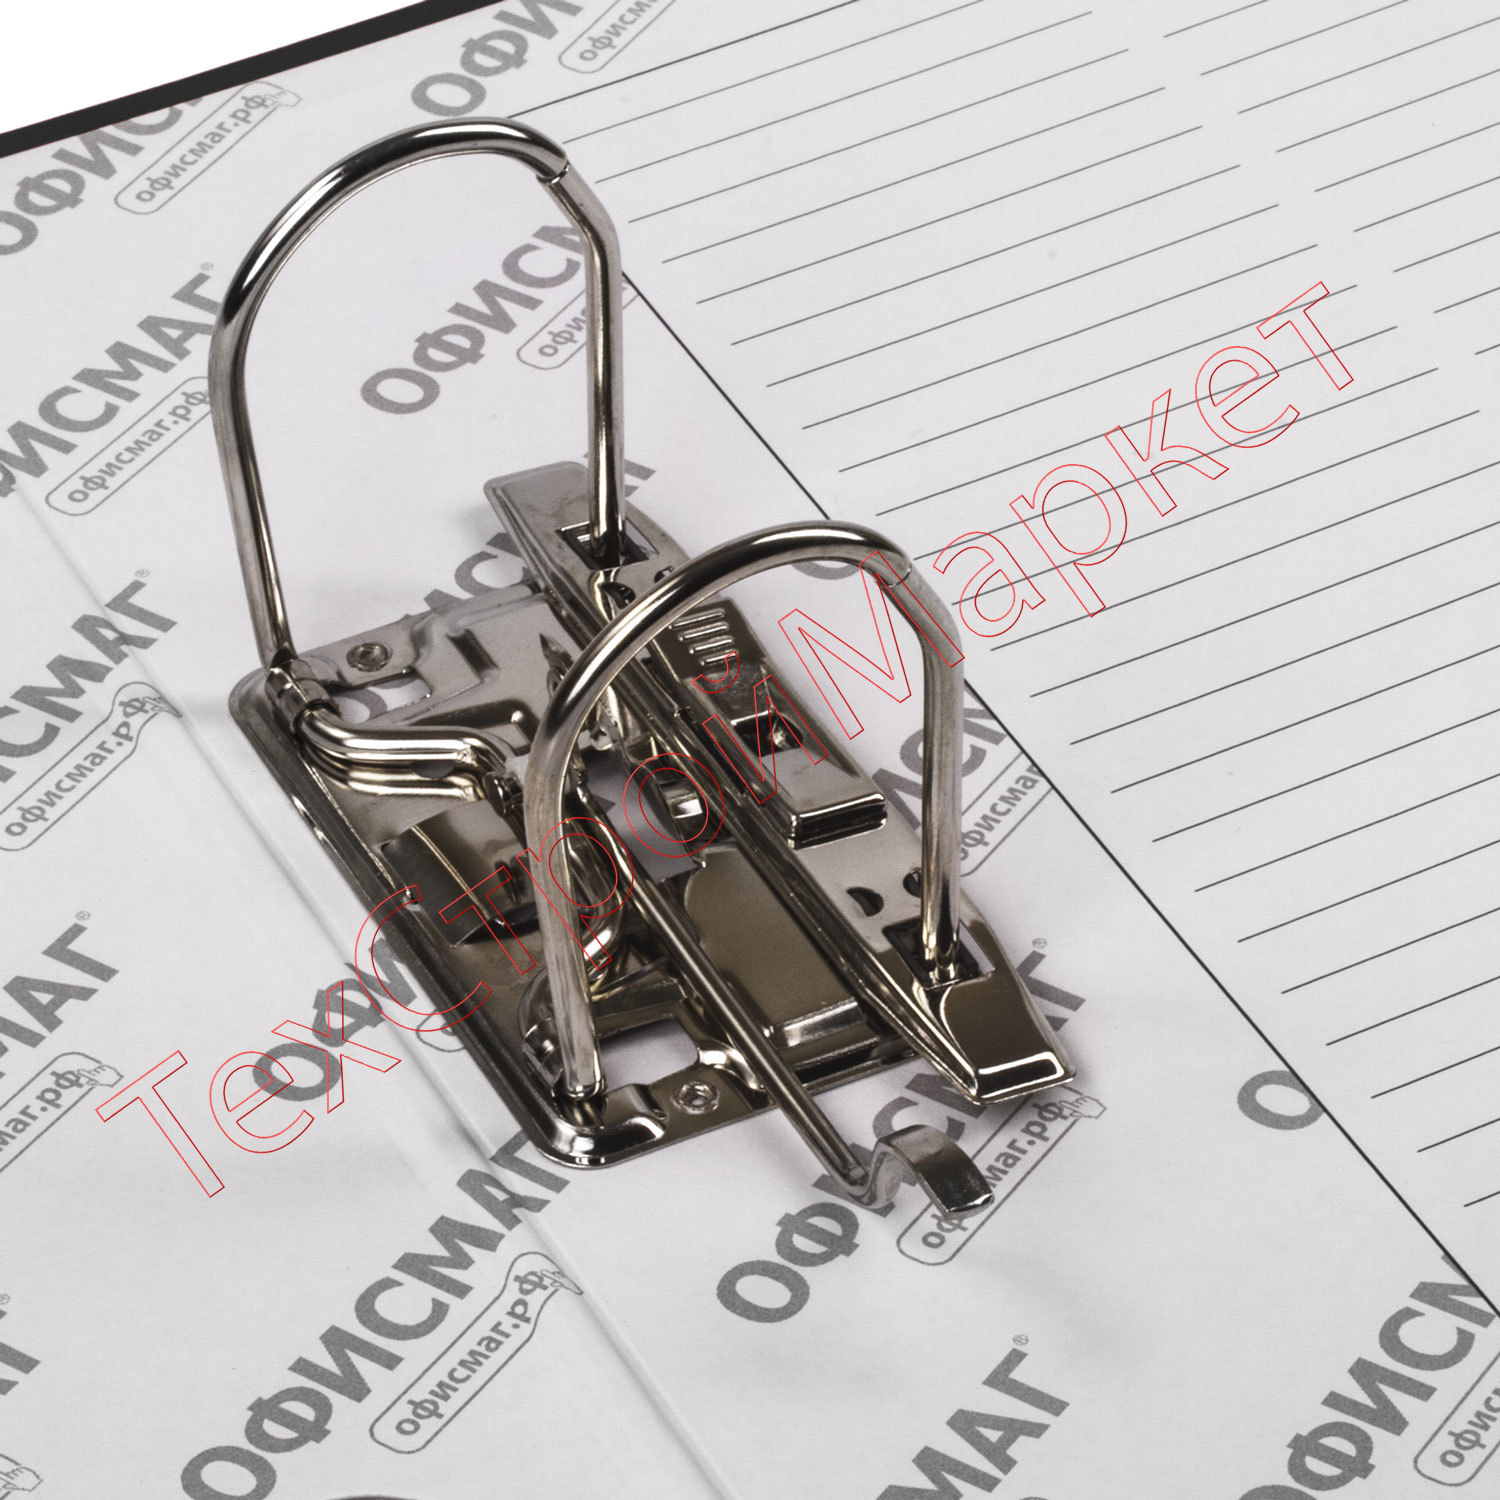 Папка-регистратор ОФИСМАГ с арочным механизмом, покрытие из ПВХ, 75 мм, черная, 225748